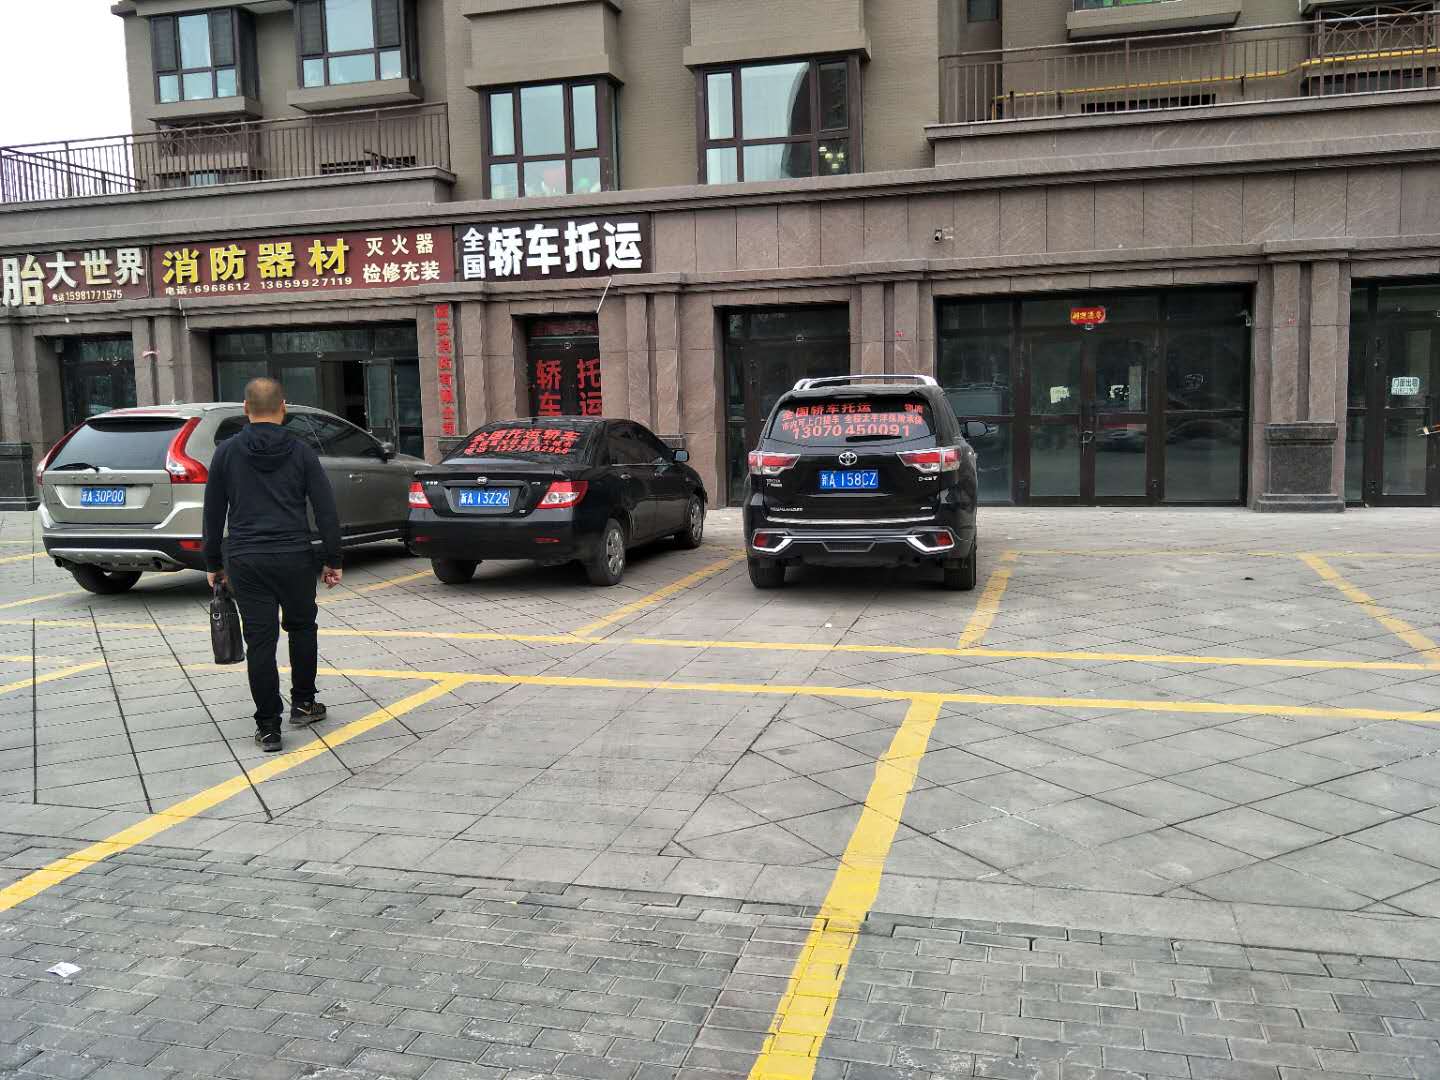 柯坪地段到天津周边托运小车的物流公司